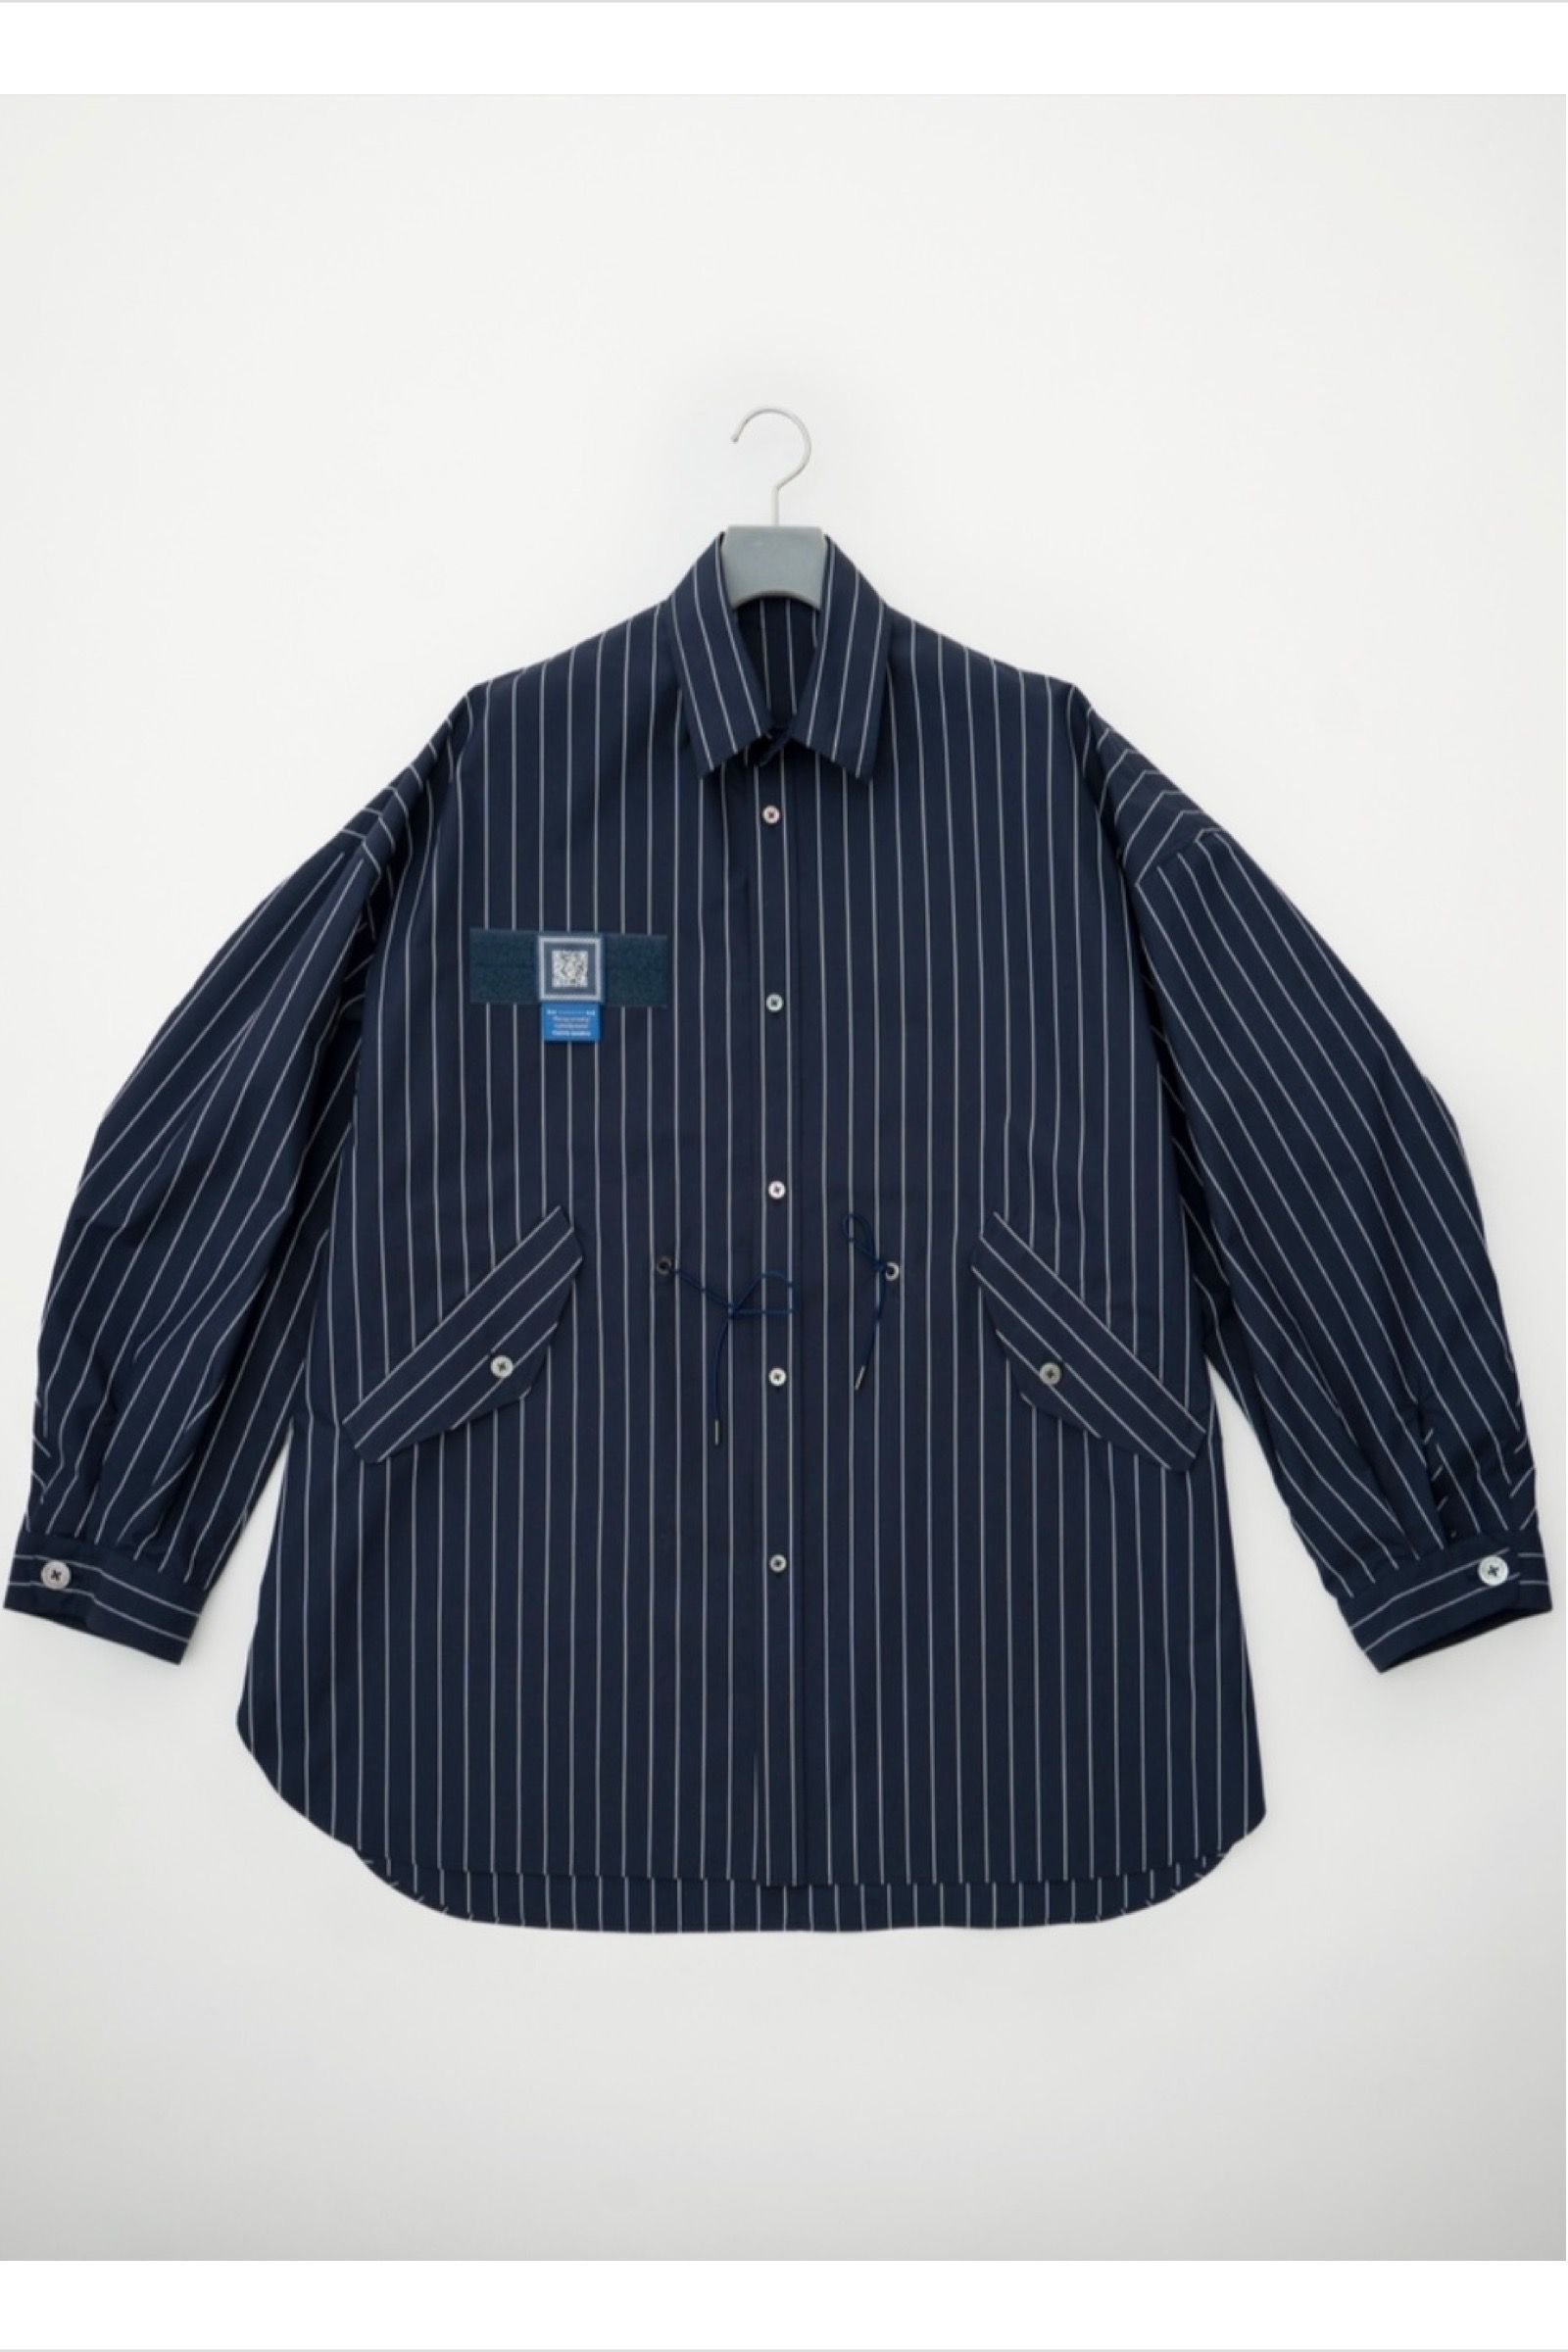 FUMITO GANRYU - m-51 shirt jacket -navy stripe- 22aw | asterisk